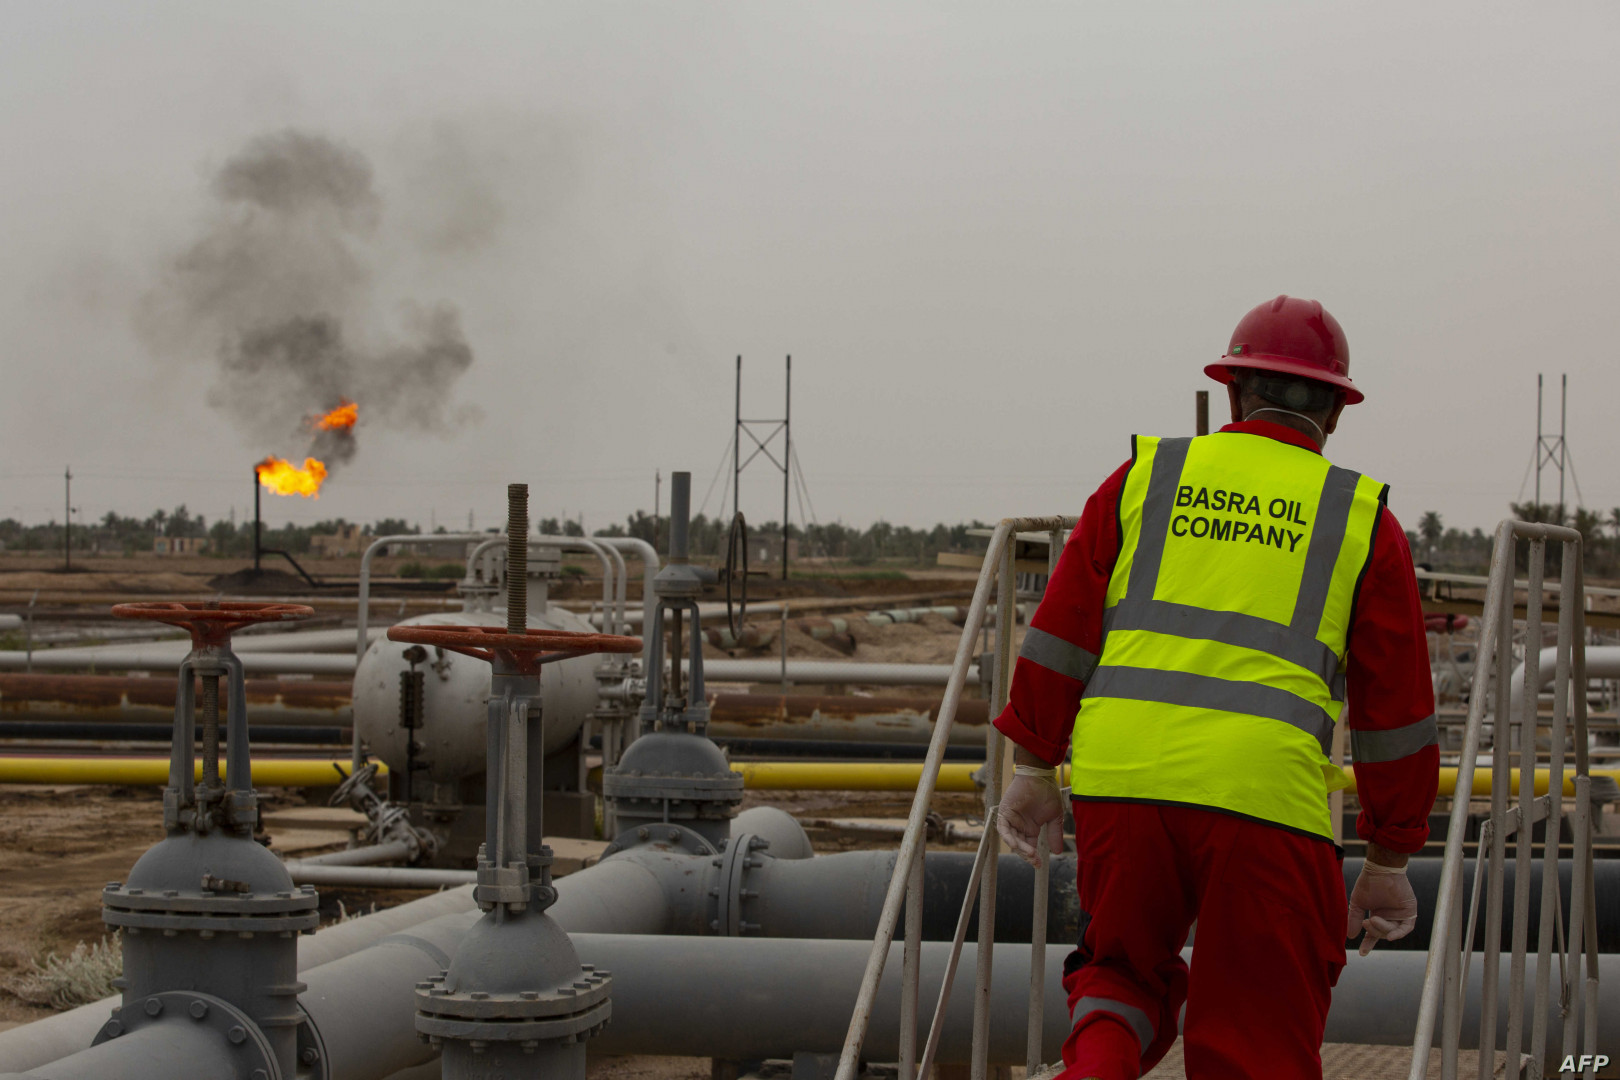 خام البصرة وسعر النفط العراقي